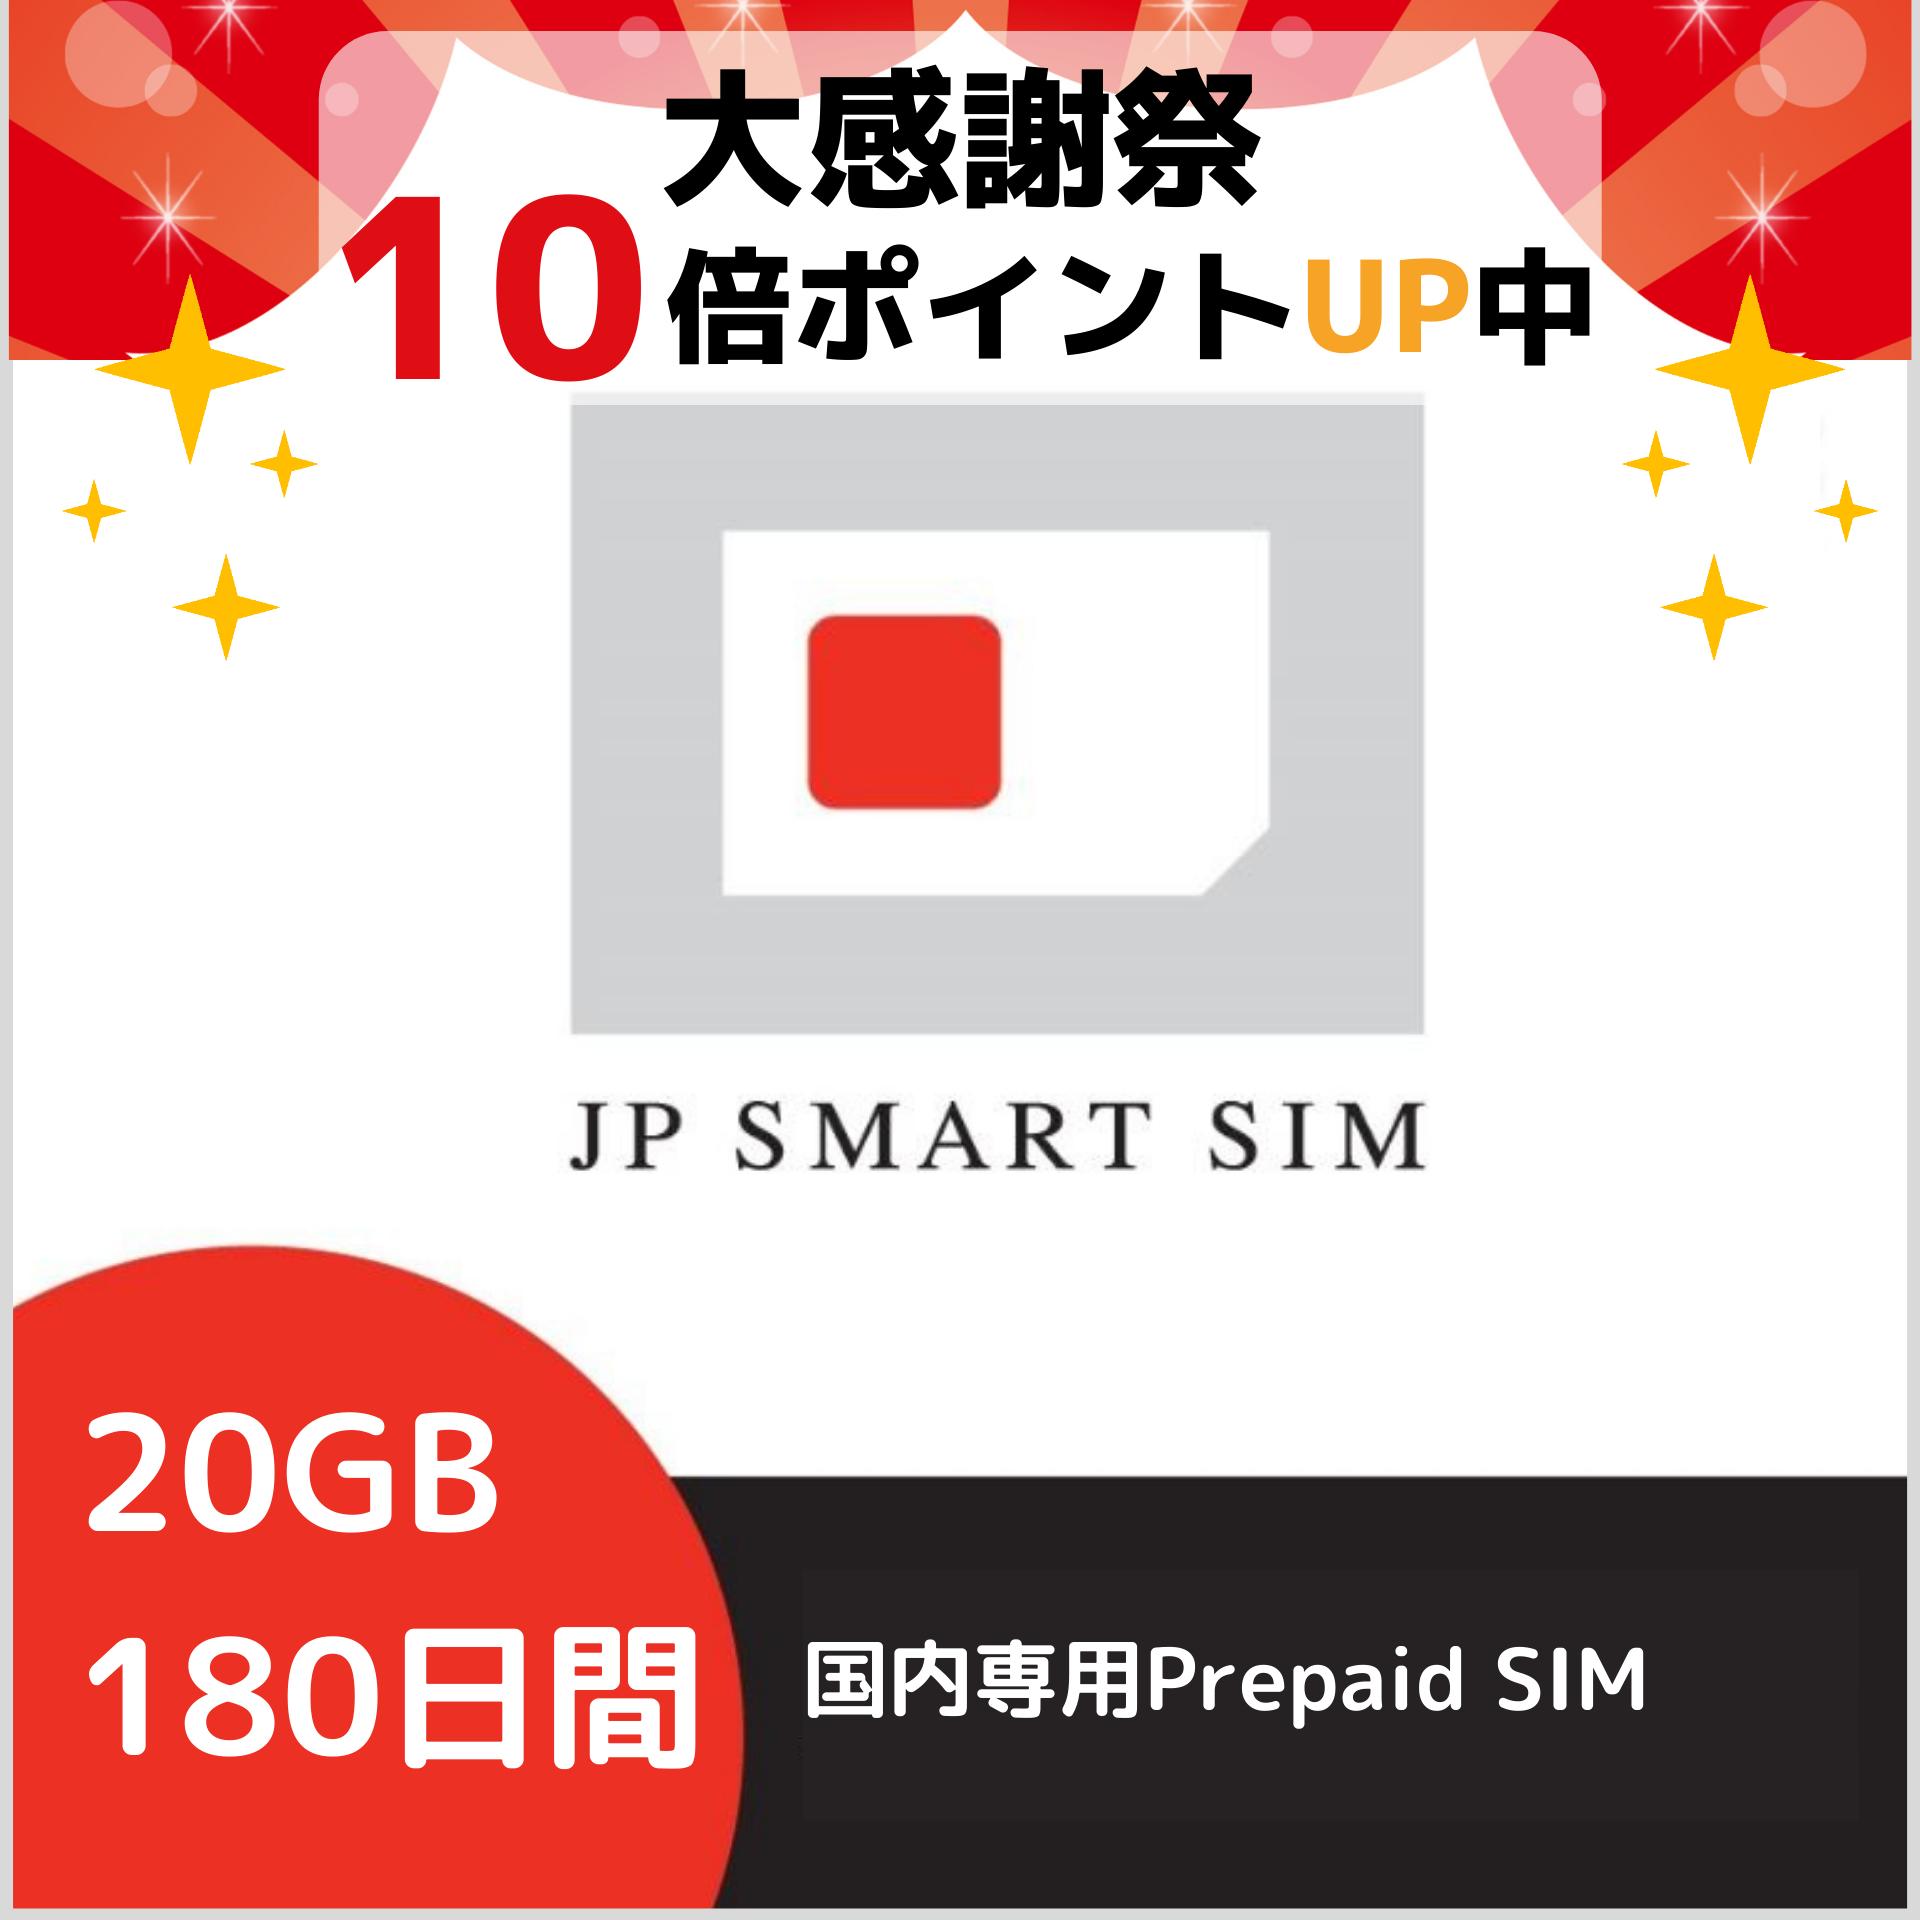 プリペイドSIM 日本国内専用 DOCOMO ドコモ プリペイド Prepaid SIMカード 送料無料 マルチSIM 一時帰国 隔離 大感謝祭10倍ポイント + クーポン利用で￥5 580 利用期限延長可能 ブランド品 20GB SIM DXHUB 180日間 大容量 即納送料無料 Docomo回線 card テレワーク 最適 使い捨てSIM 在宅勤務 データリチャージ可能 LTE対応